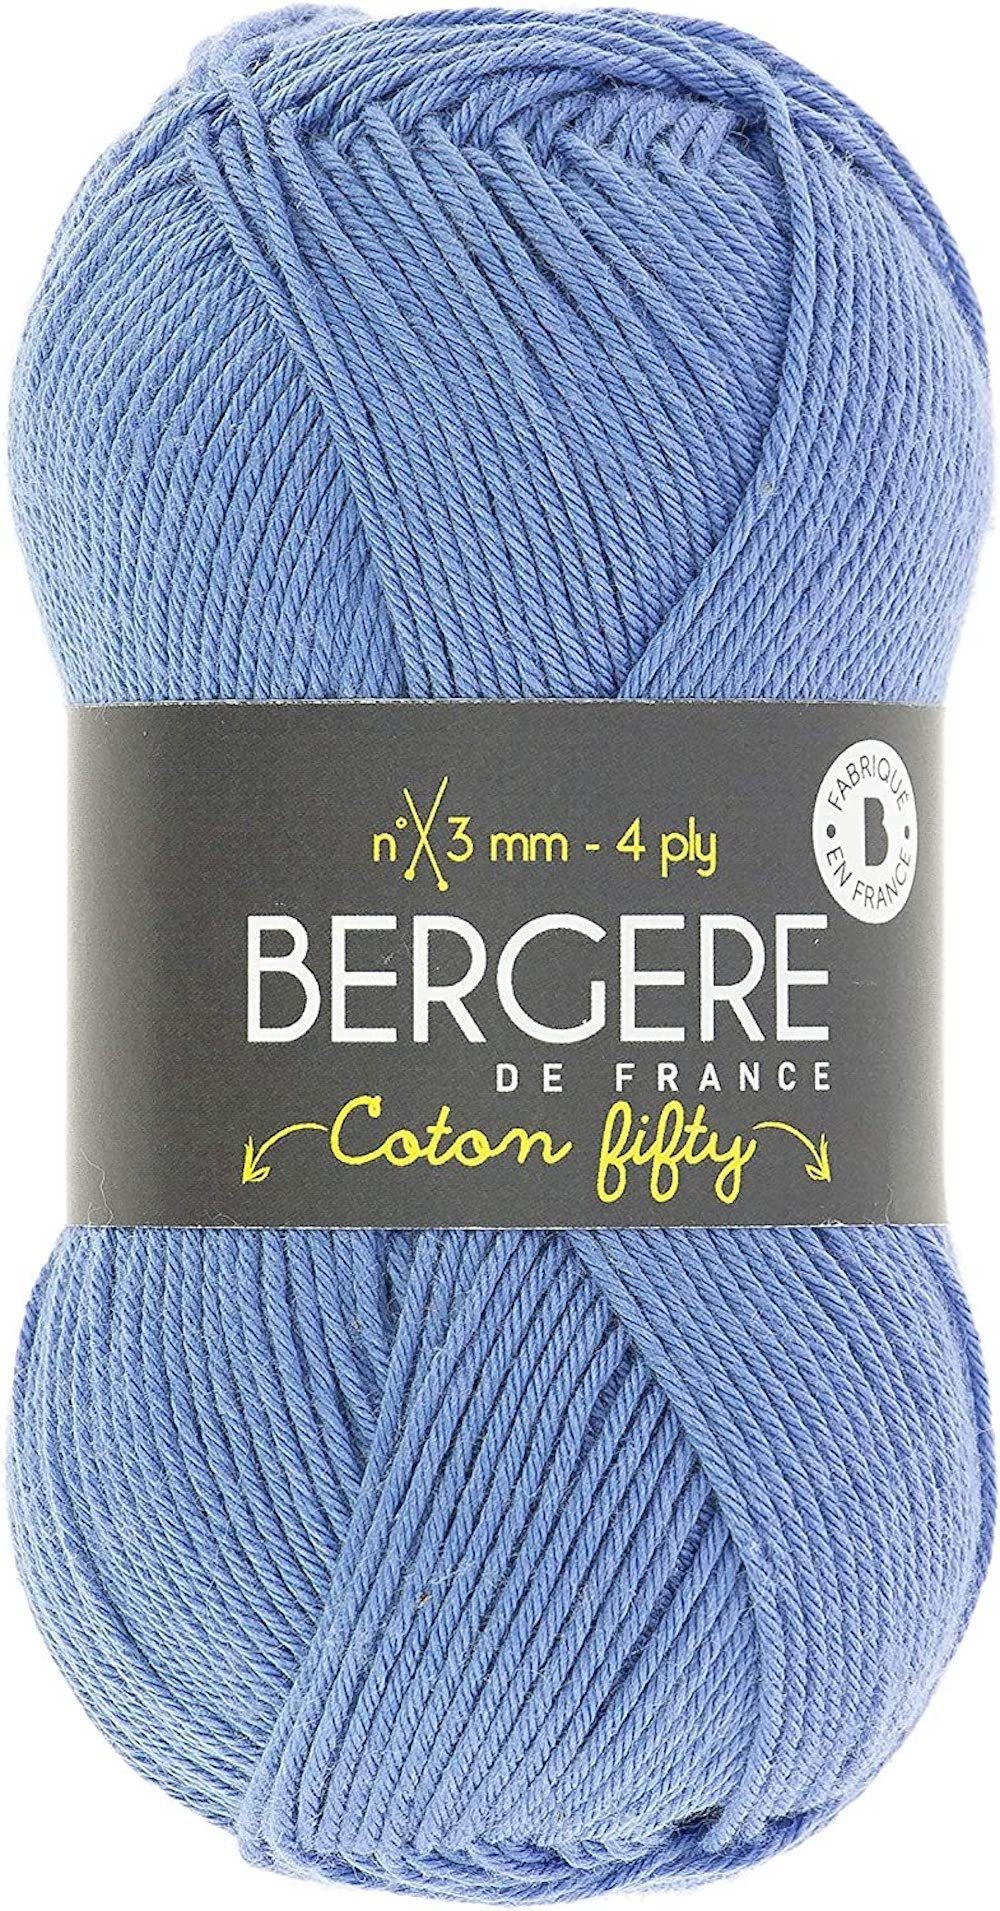 Bergere Dekofigur Coton Fifty, Baumwollgarn, 50g/140m Bleuet